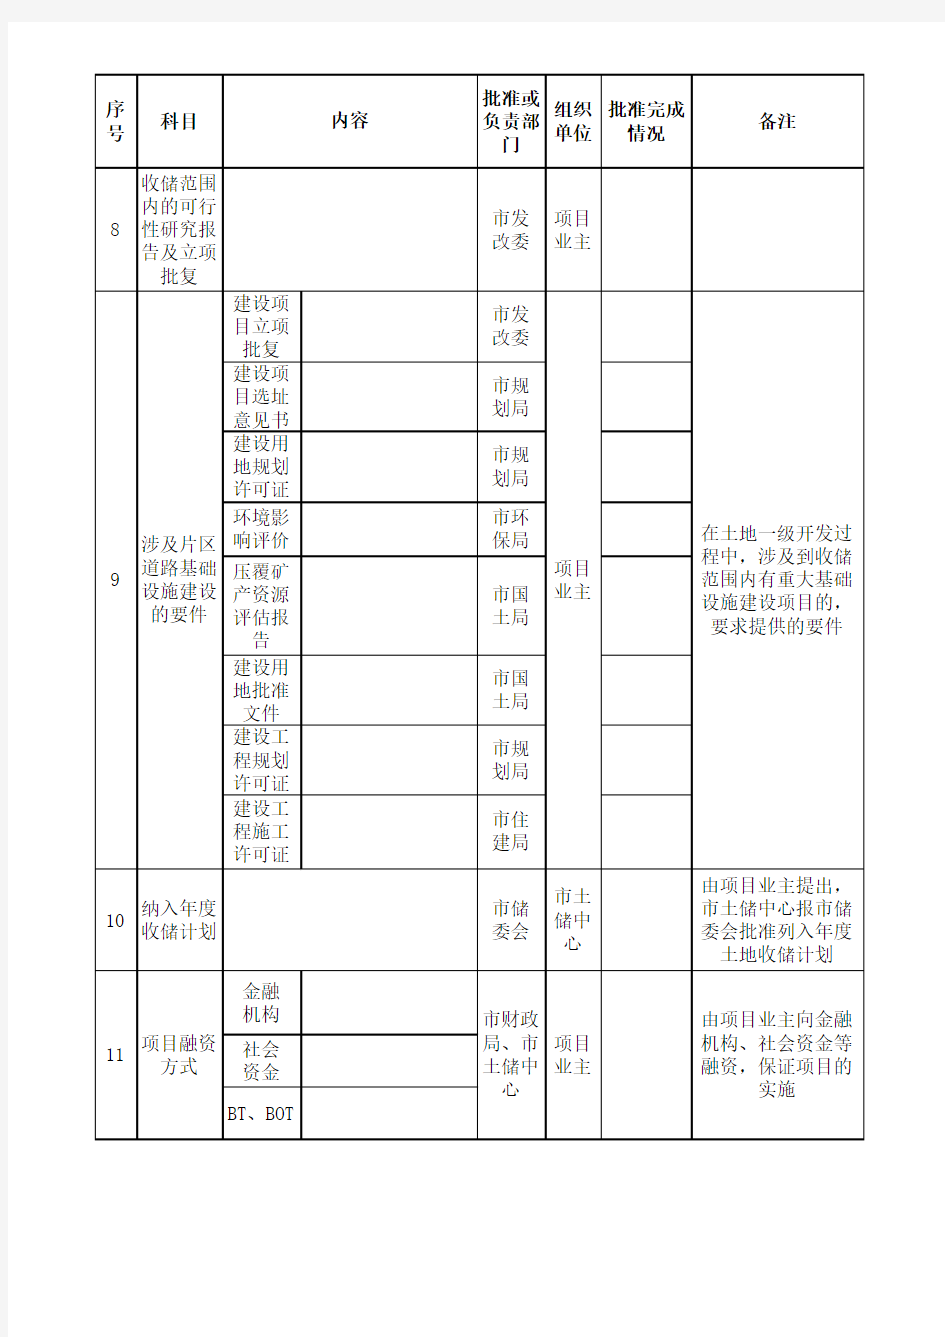 昆明市土地一级开发整理流程表(74号文件附表)